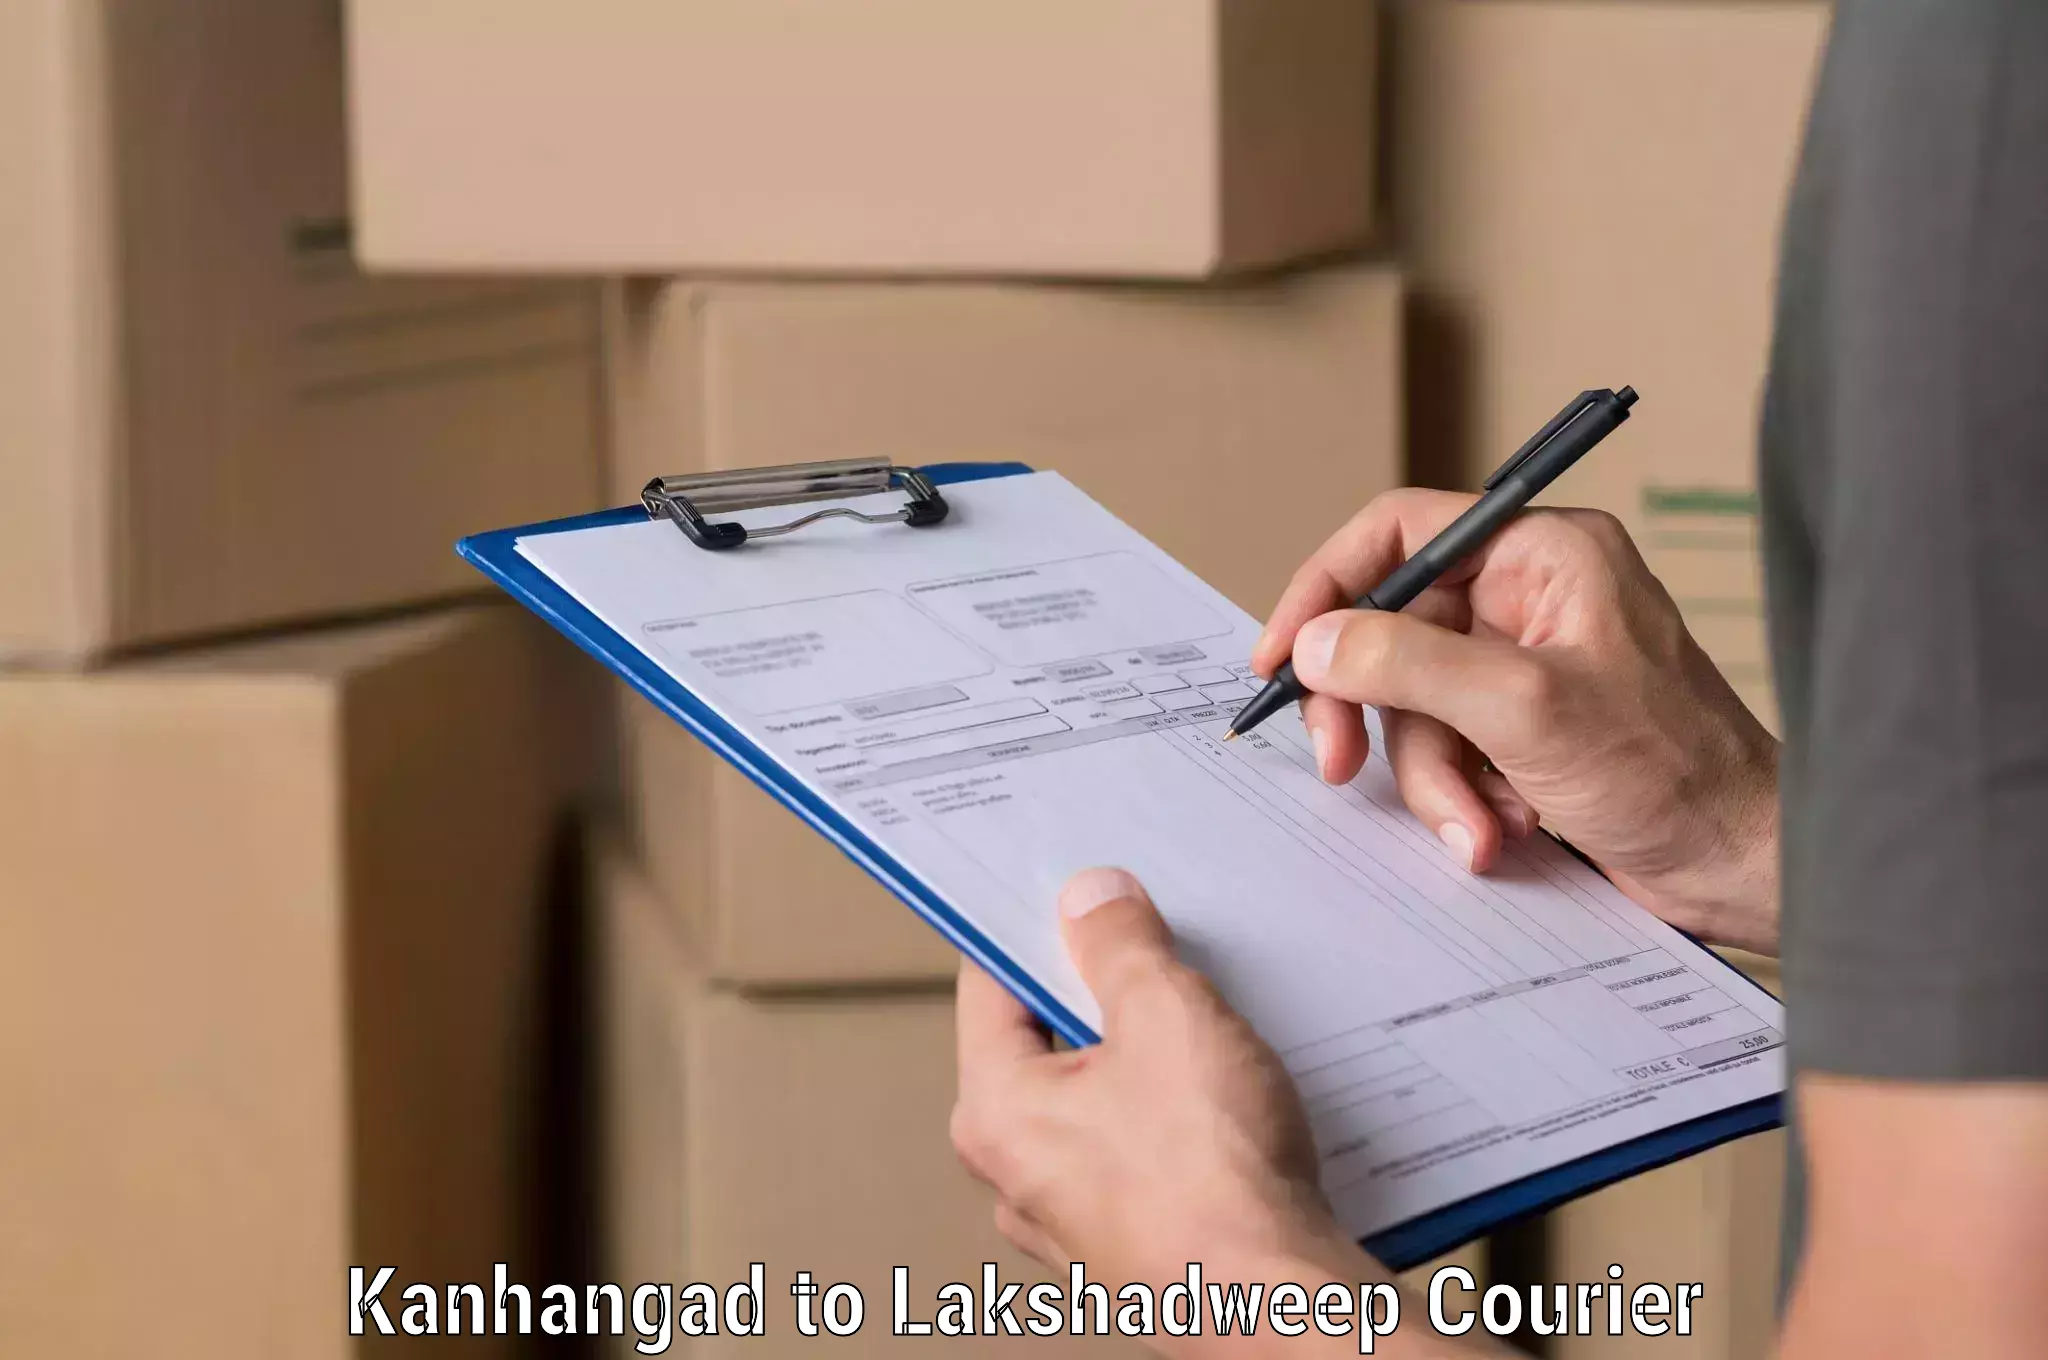 Nationwide shipping coverage Kanhangad to Lakshadweep